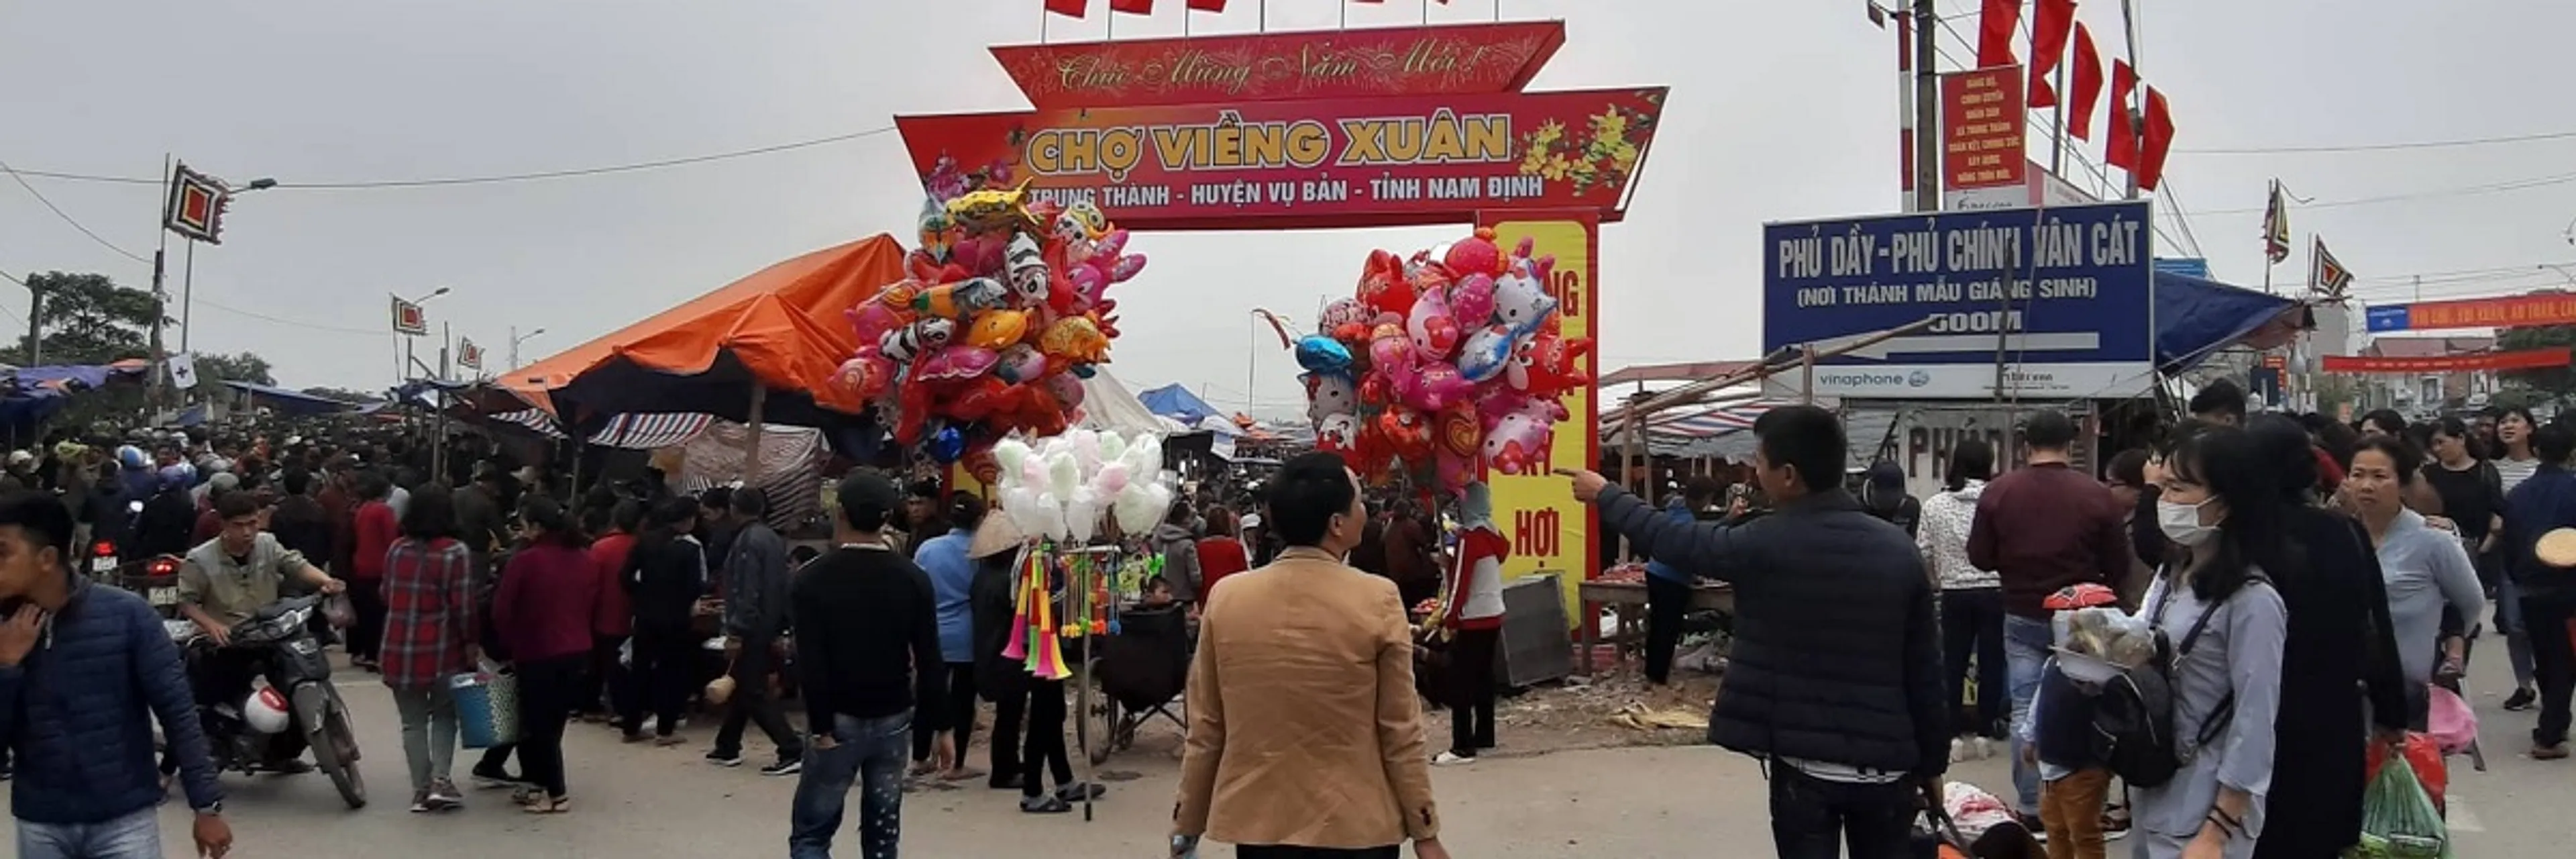 Top 5 lễ hội truyền thống ở Nam Định